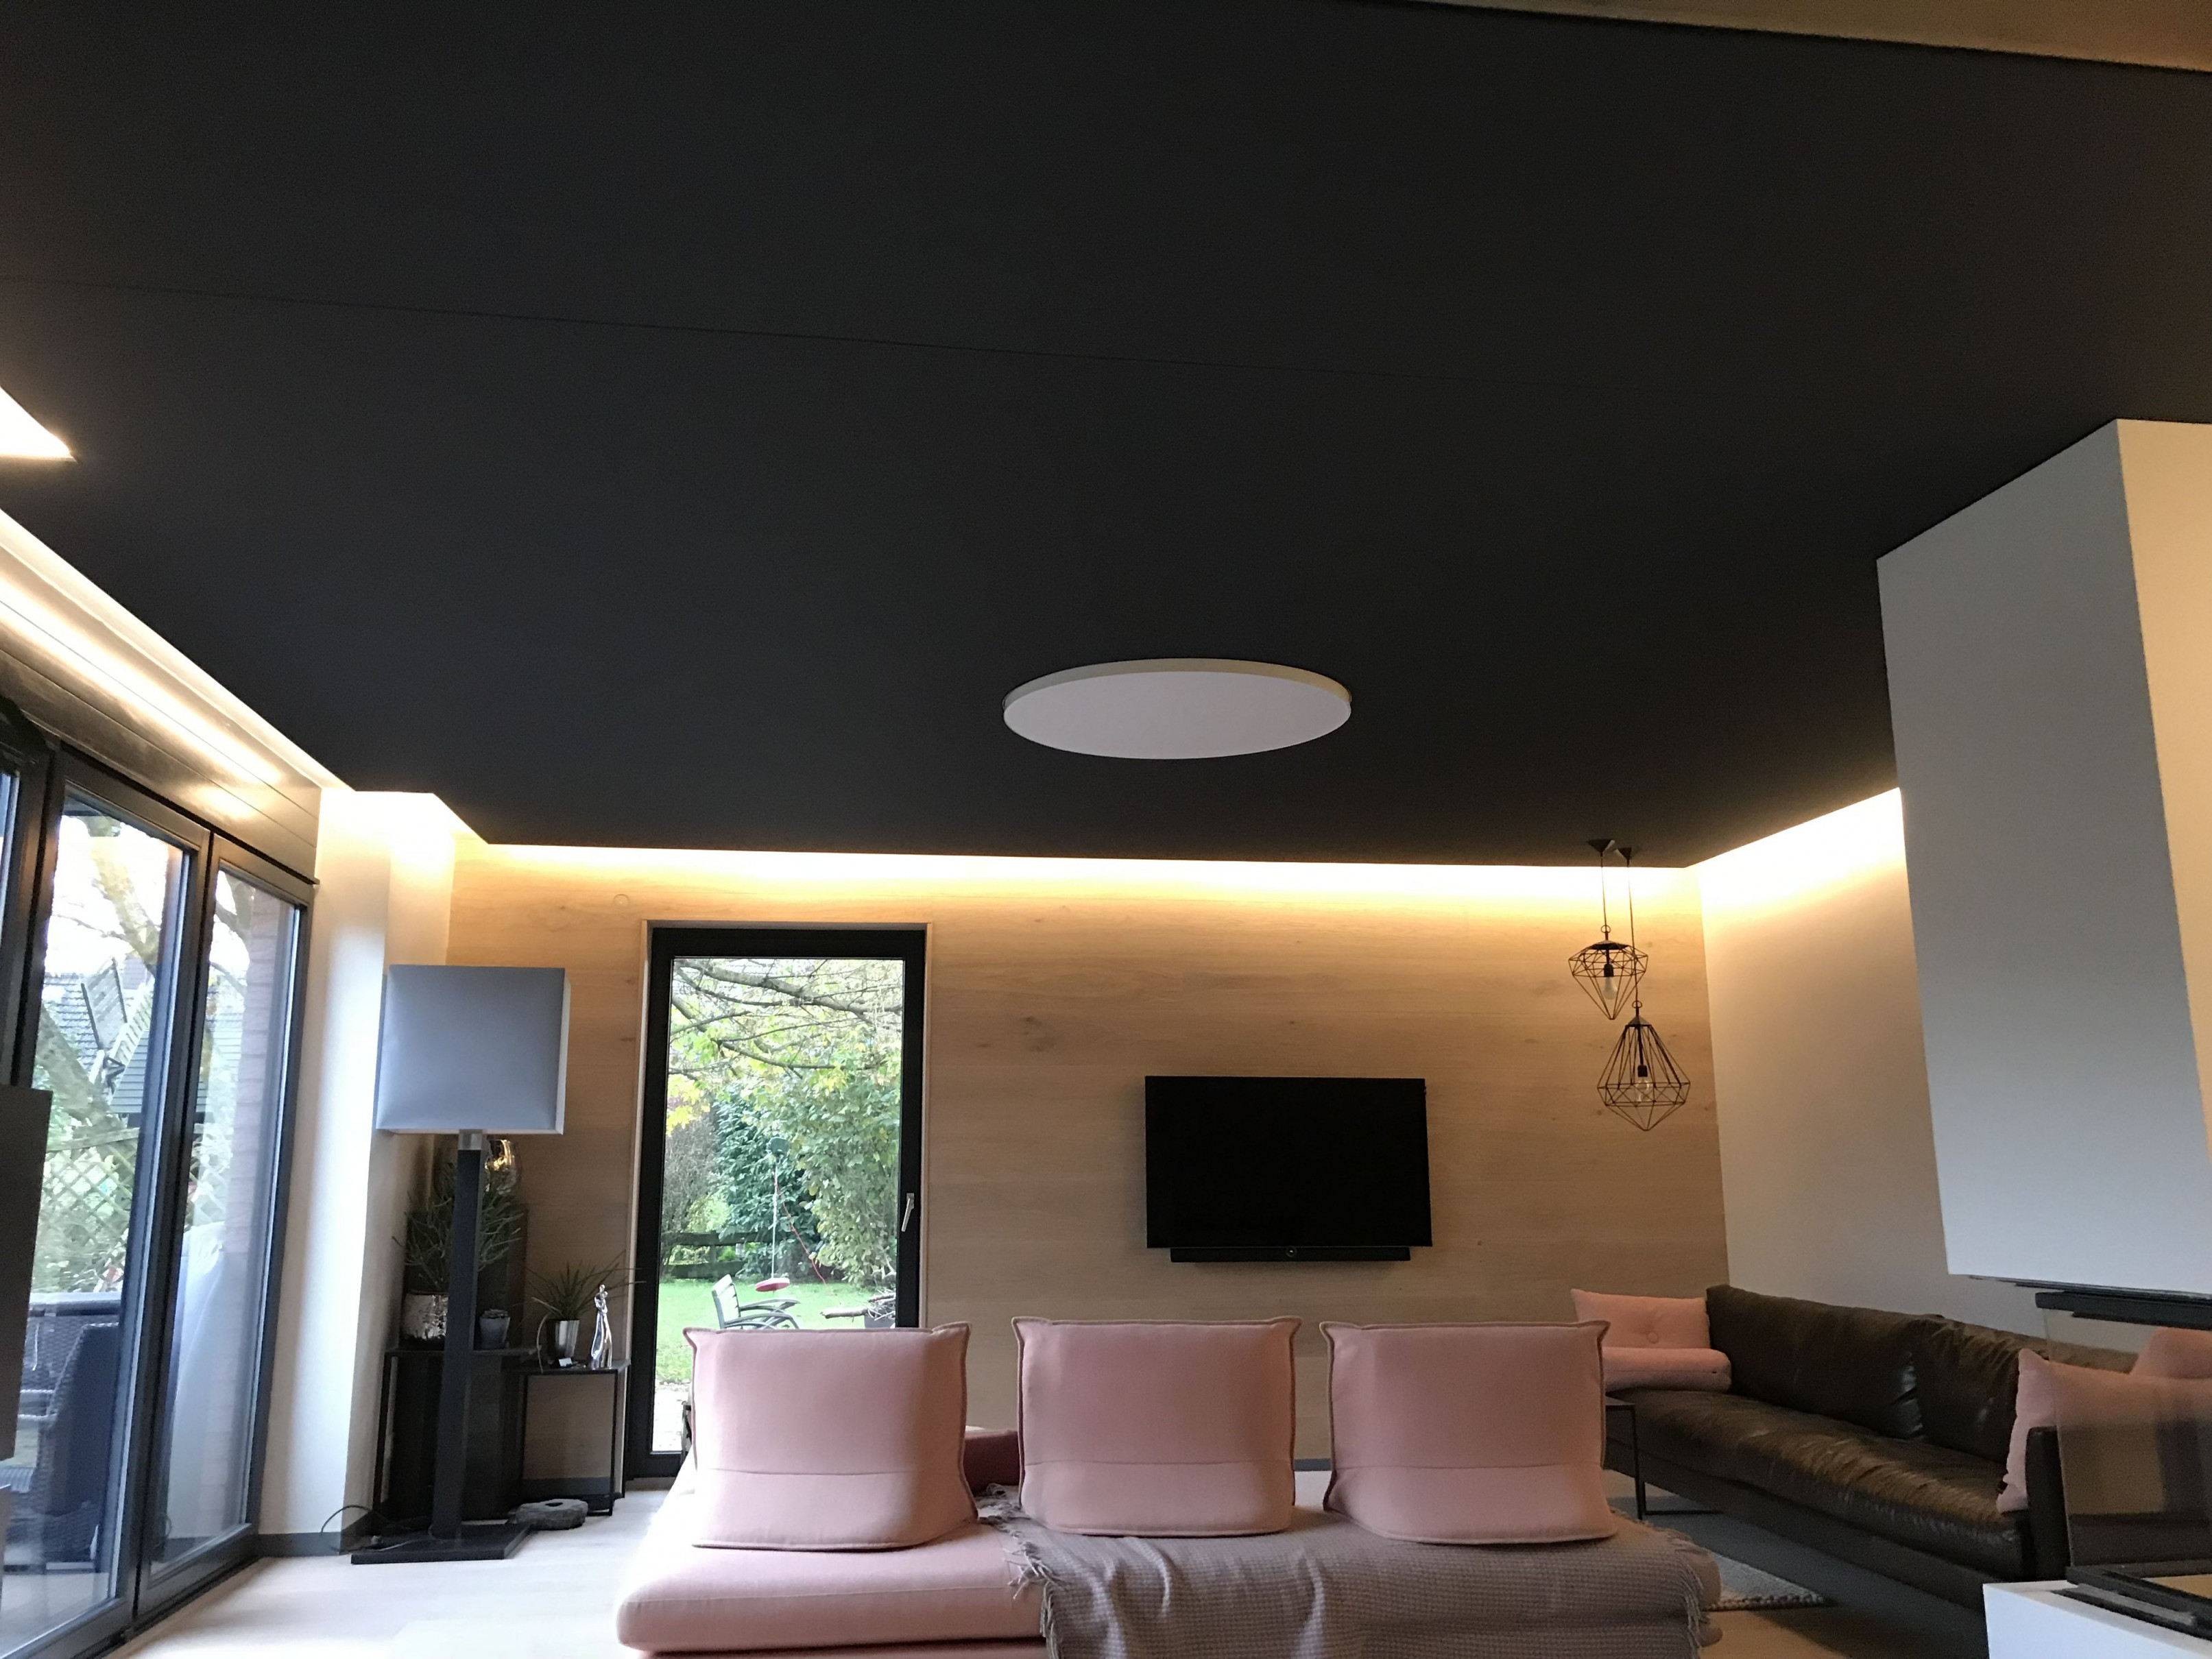 Gewebespanndecke In Anthrazit Mit Indirekter Beleuchtung Im von Moderne Deckengestaltung Wohnzimmer Bild